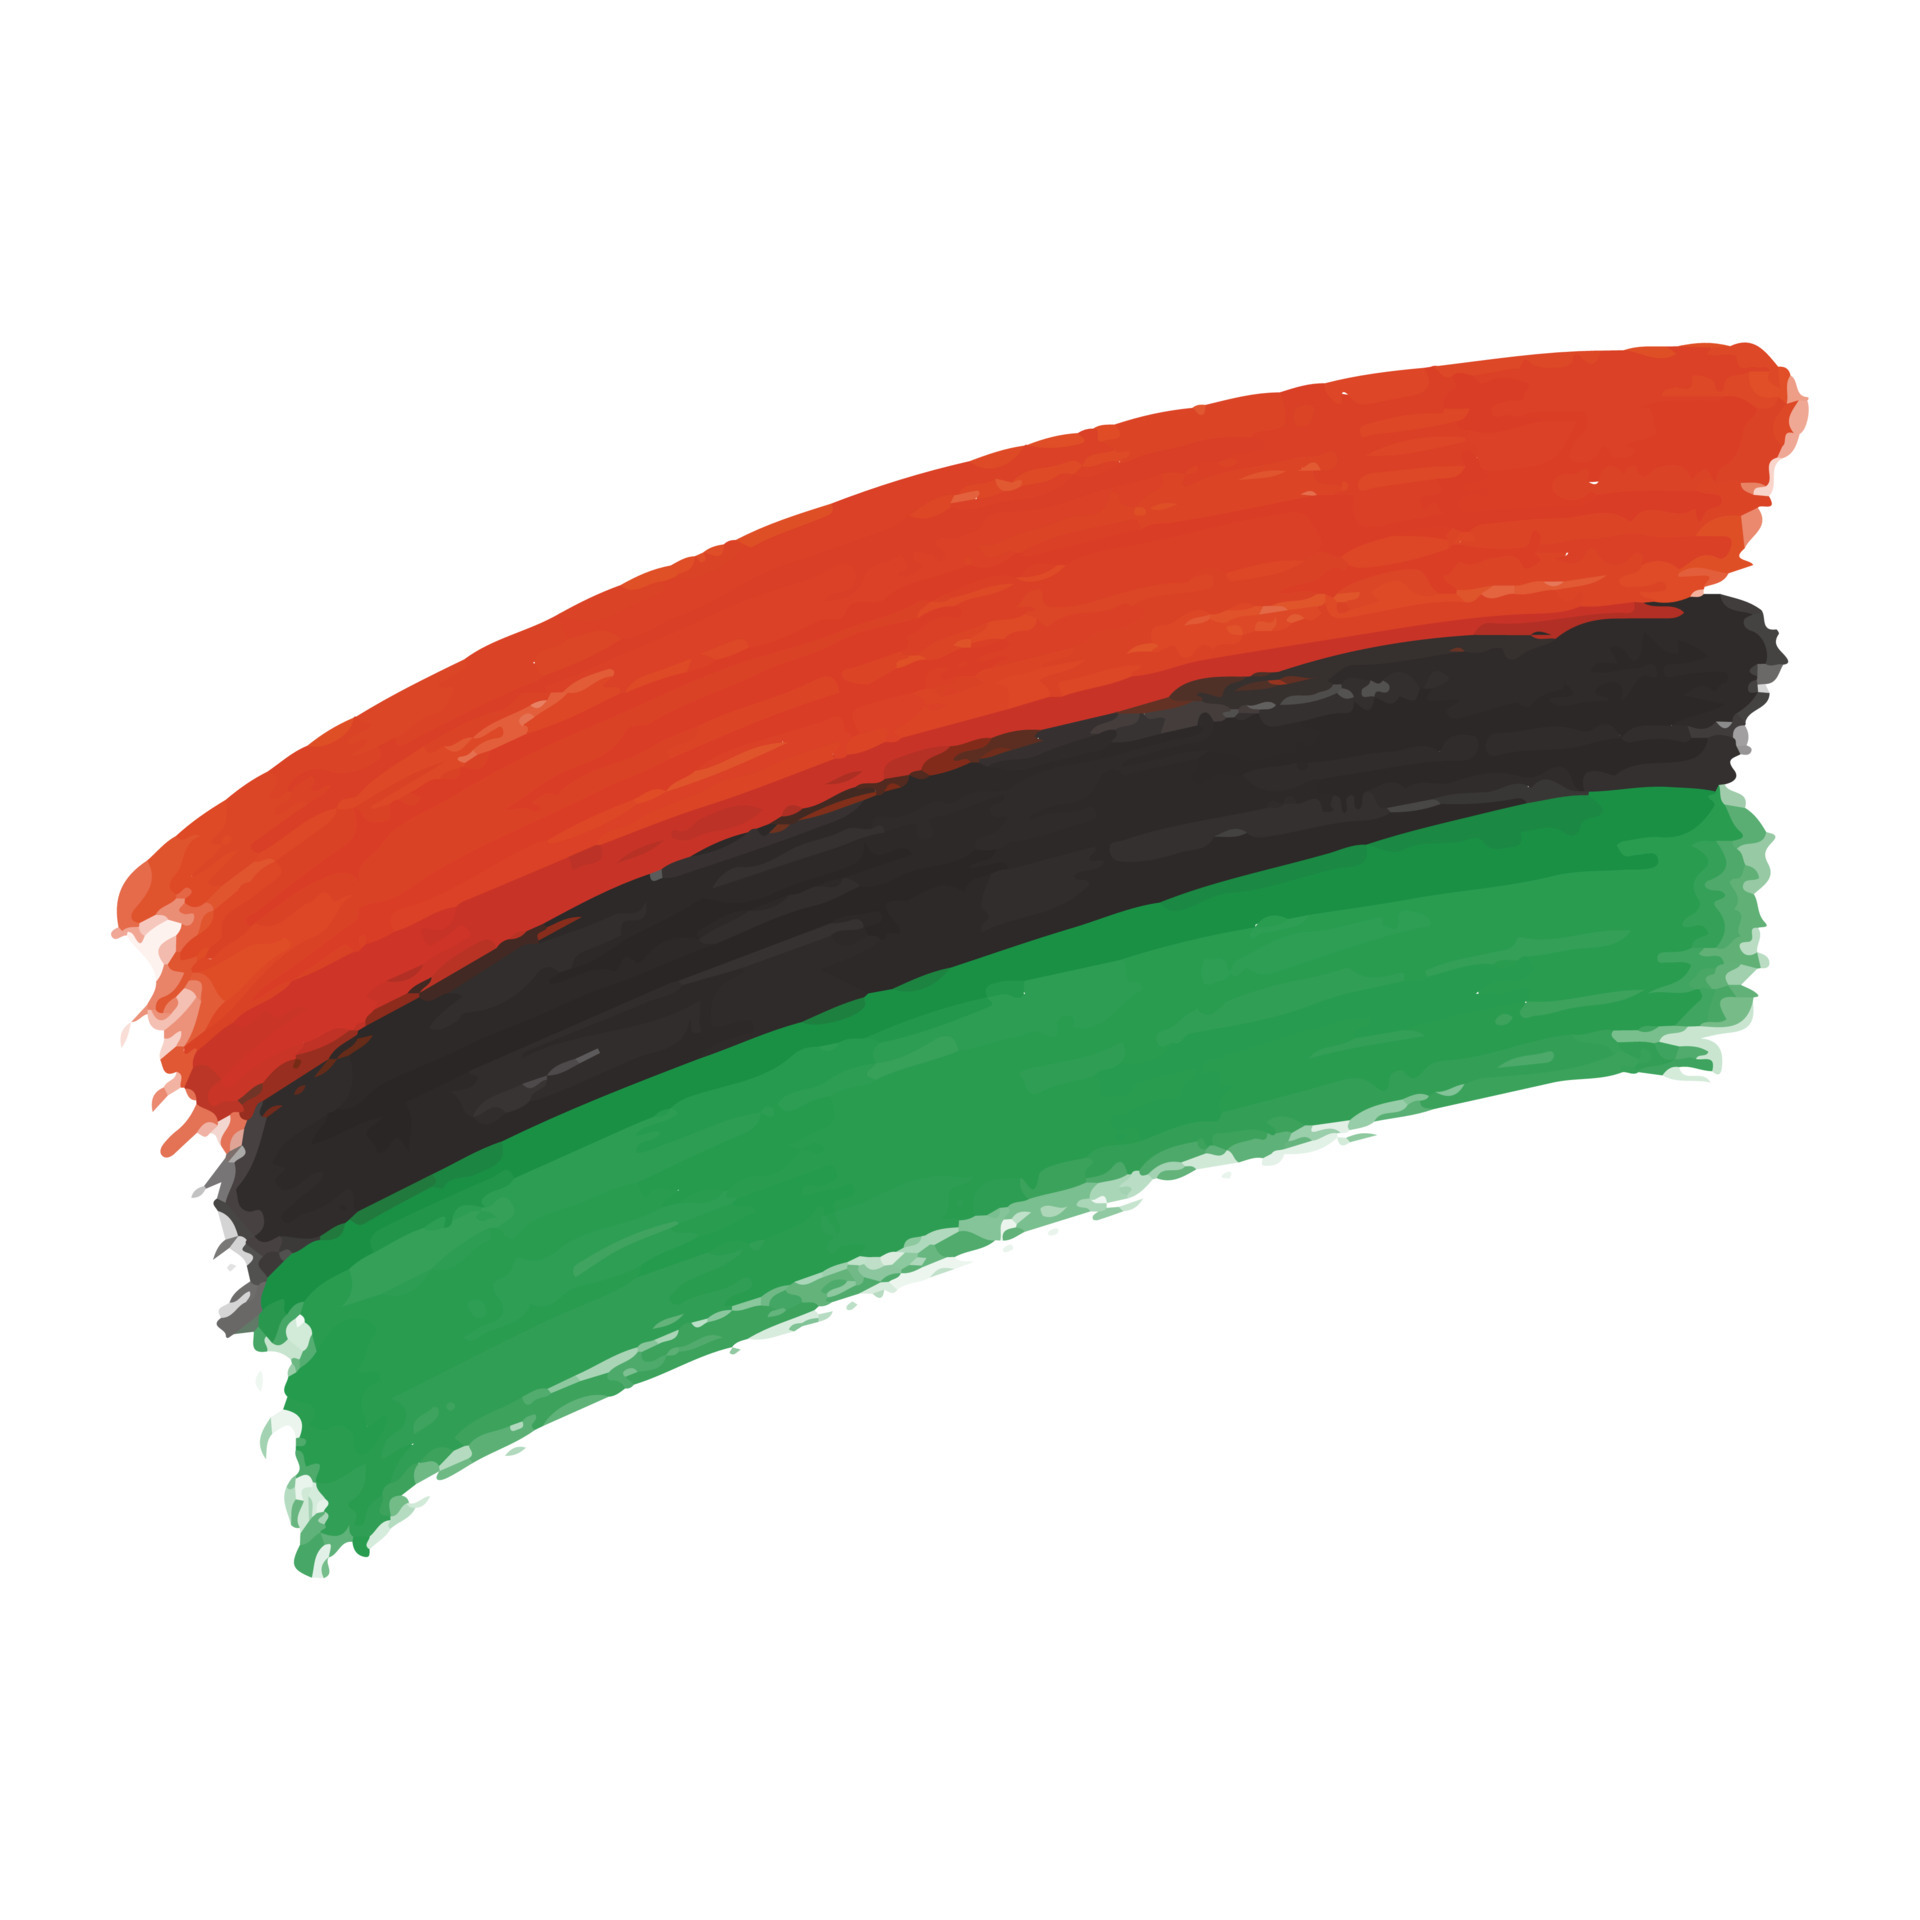 Với màu sắc đại diện cho châu Phi, lá cờ Pan African sẽ khiến bạn cảm thấy hào hứng và hiếu khách đến khám phá những hình ảnh đầy cảm hứng trong bức ảnh liên quan.